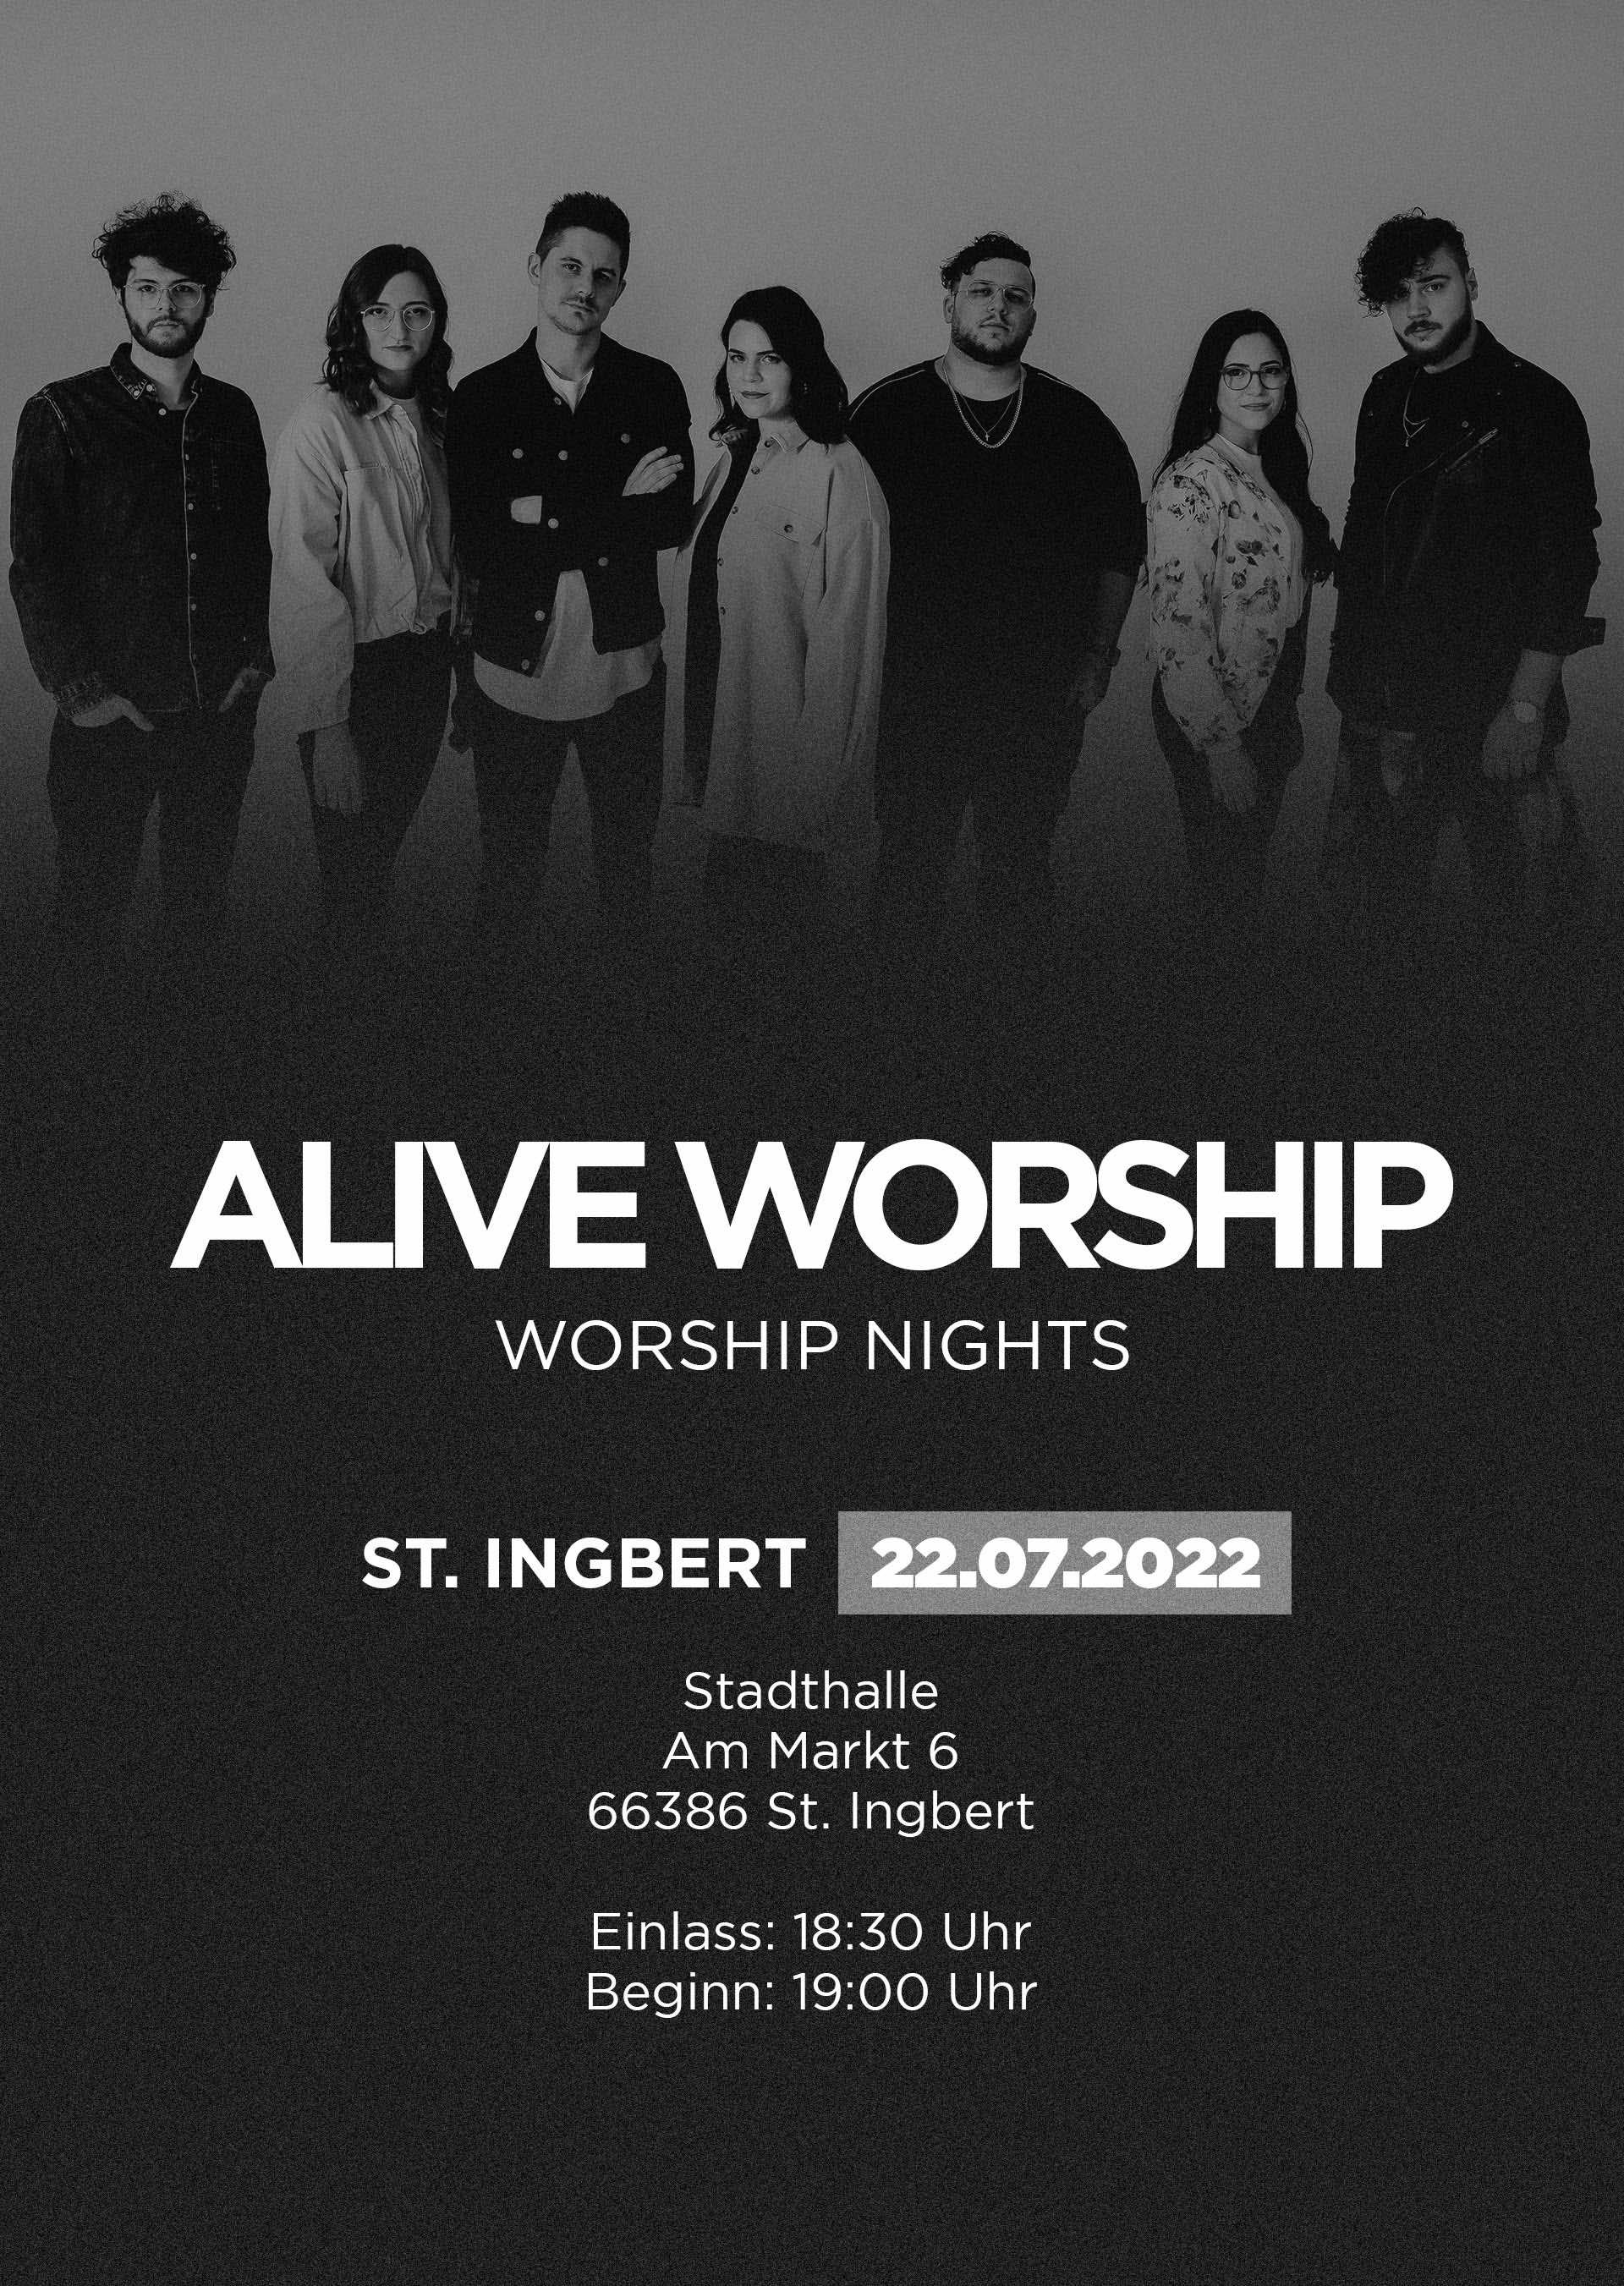 Alive Worship in St. Ingbert